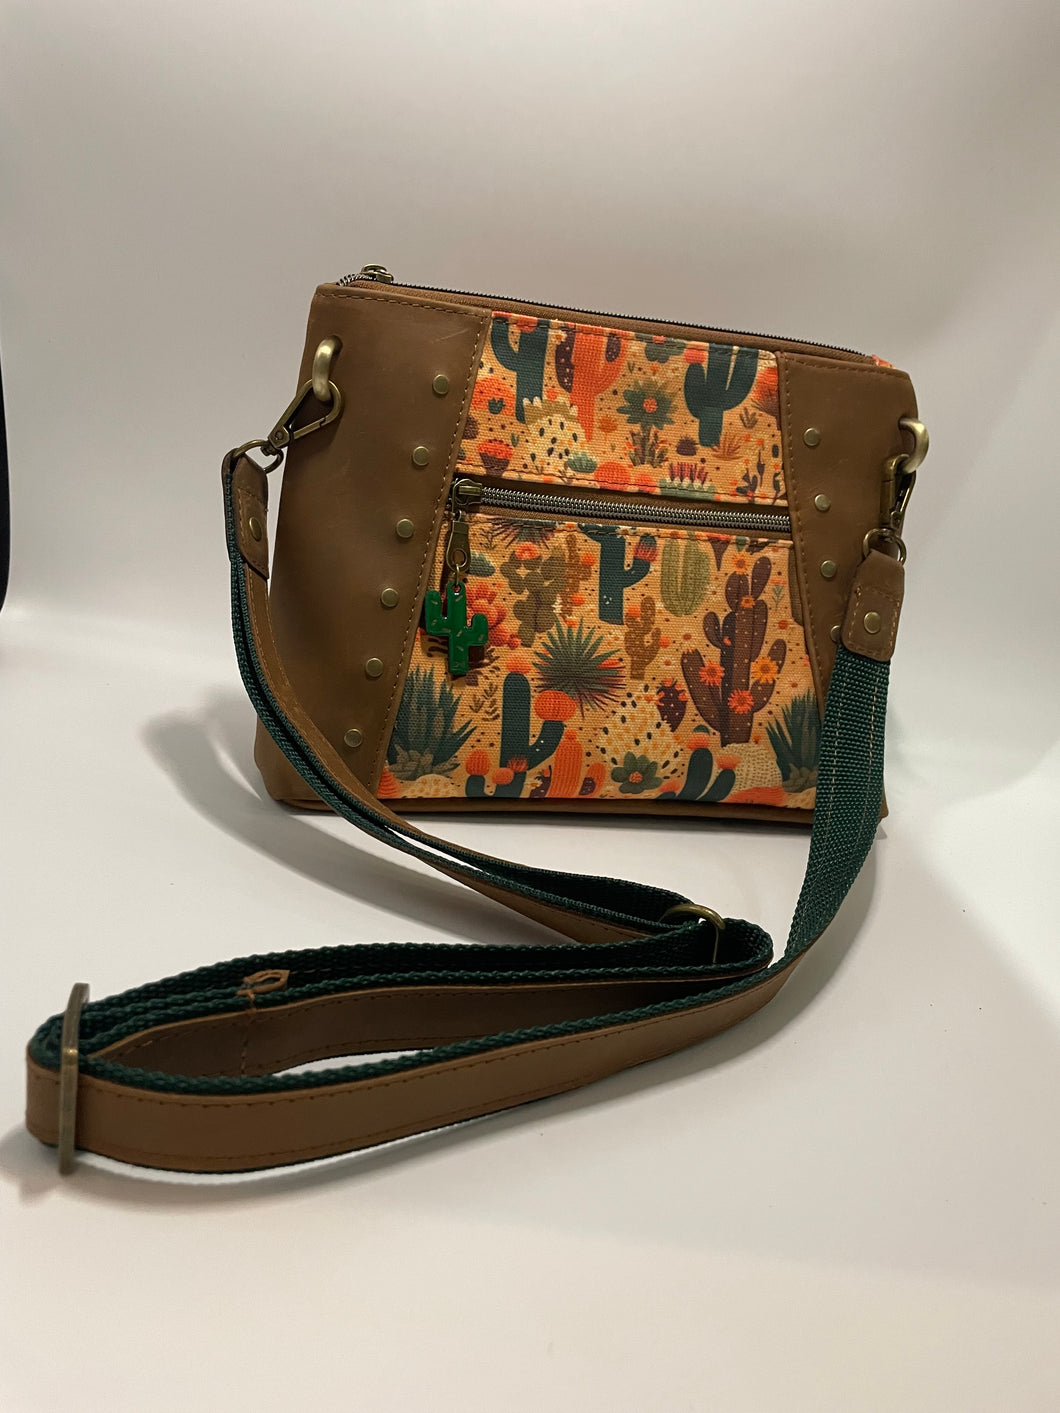 Southwest style leather purse